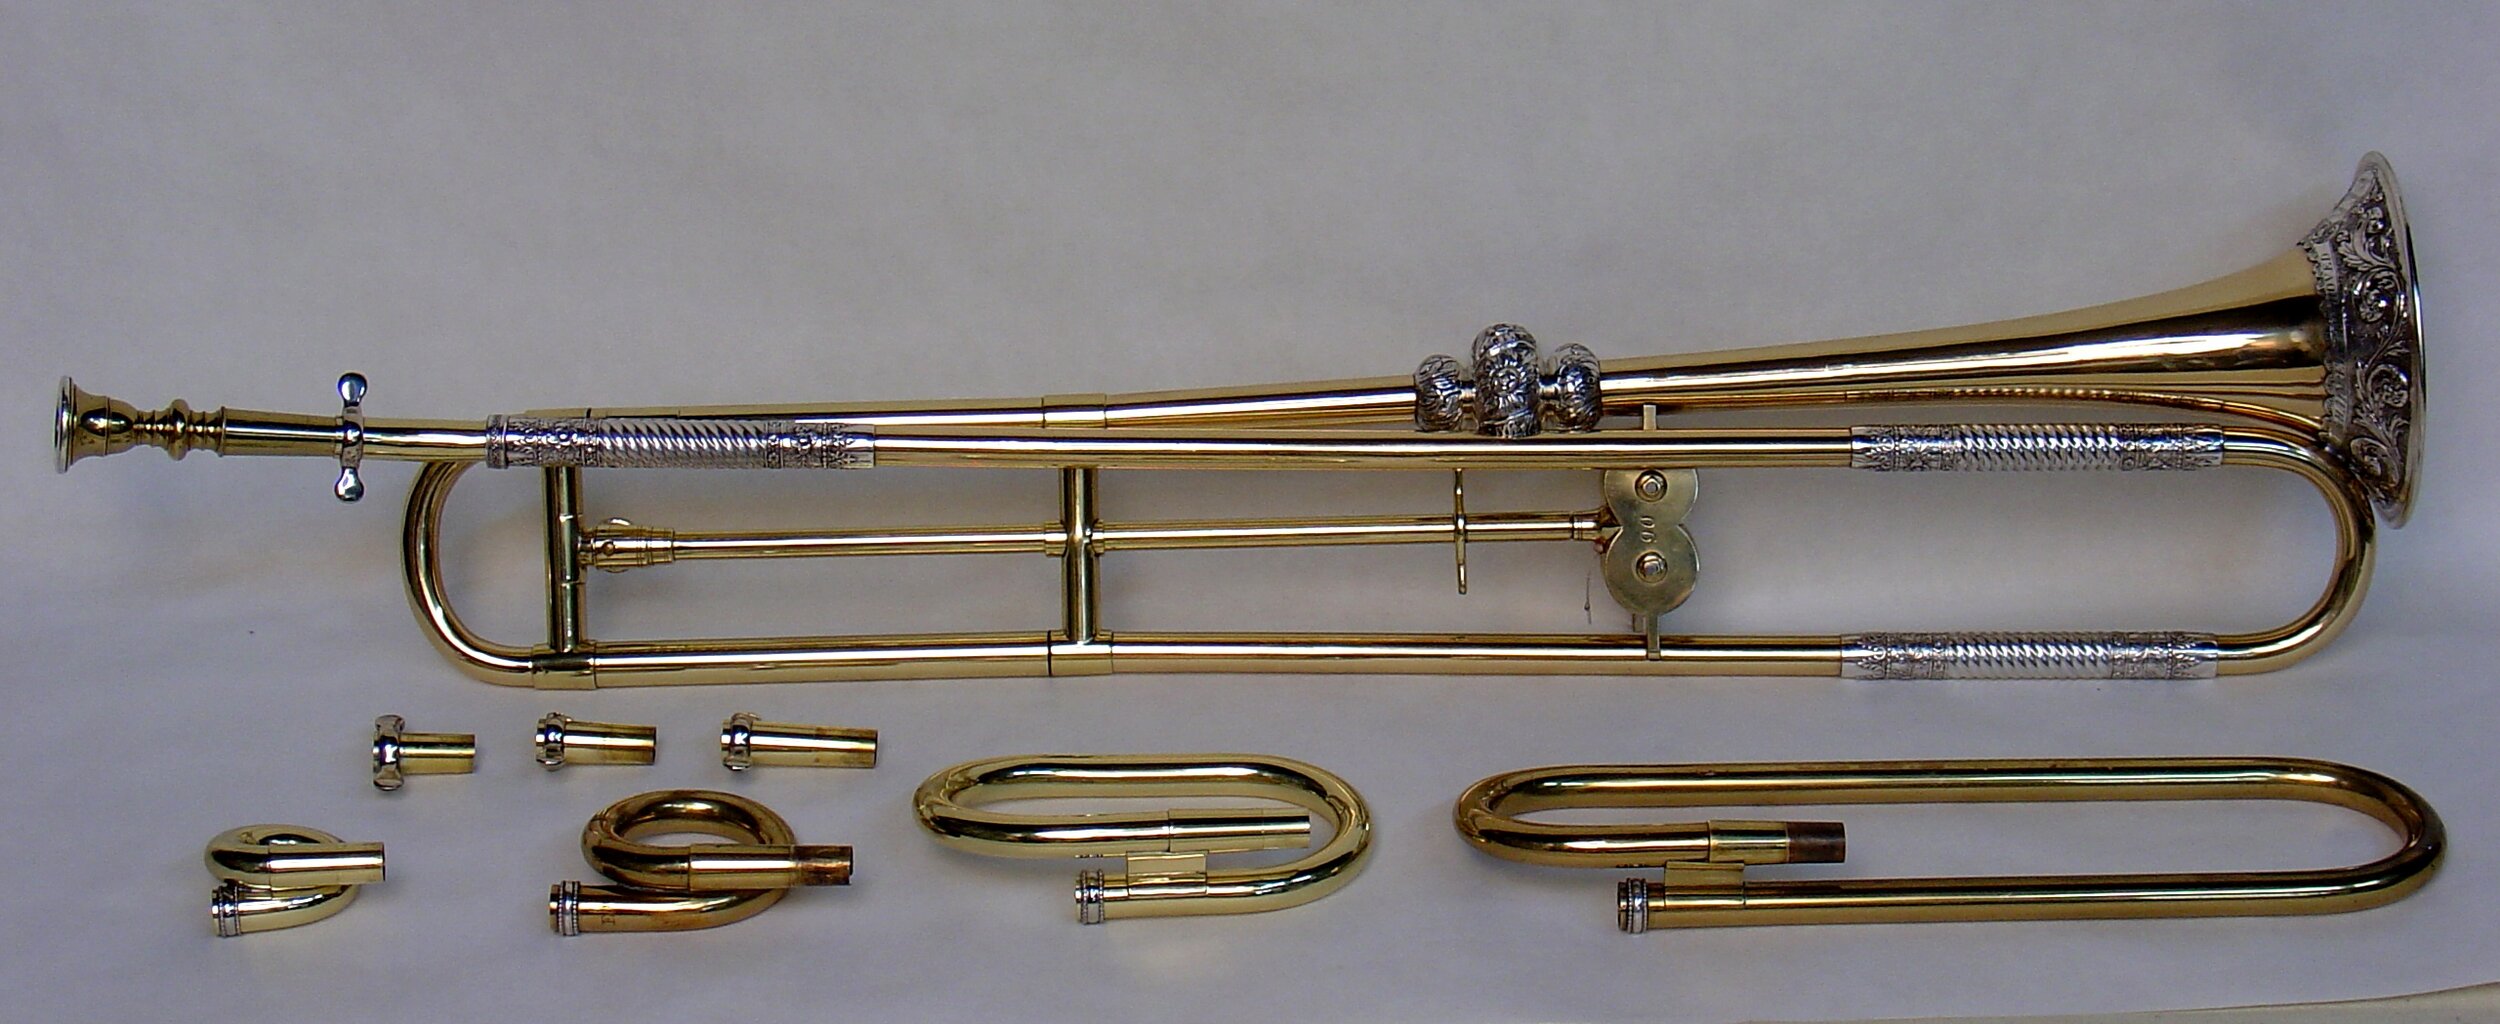 Slide Trumpet by John Kohler